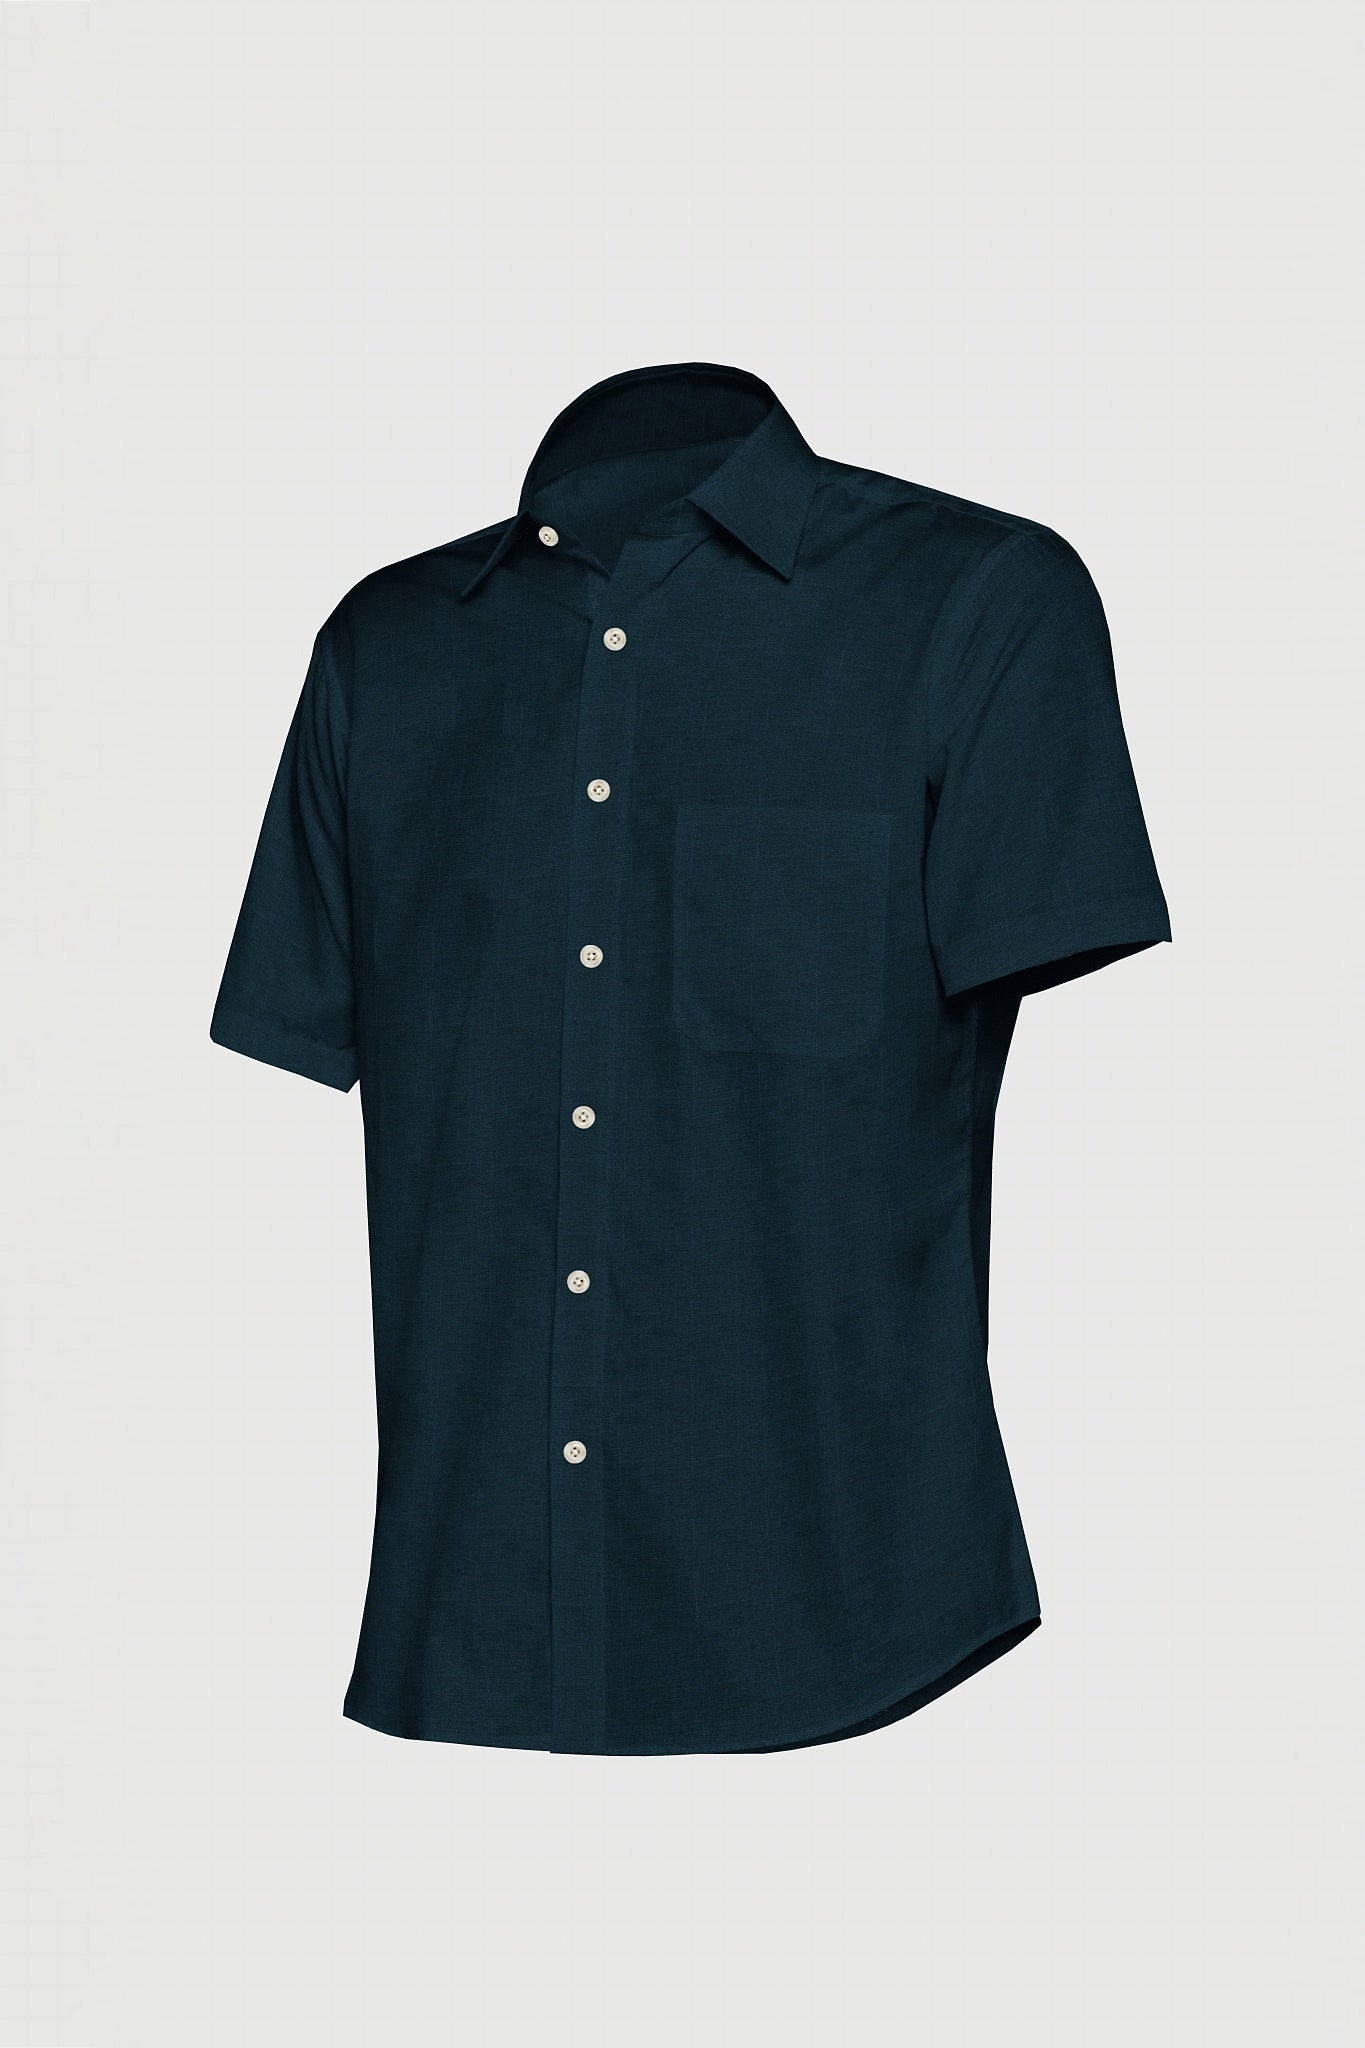 Teal Blue Luxurious Linen Shirt